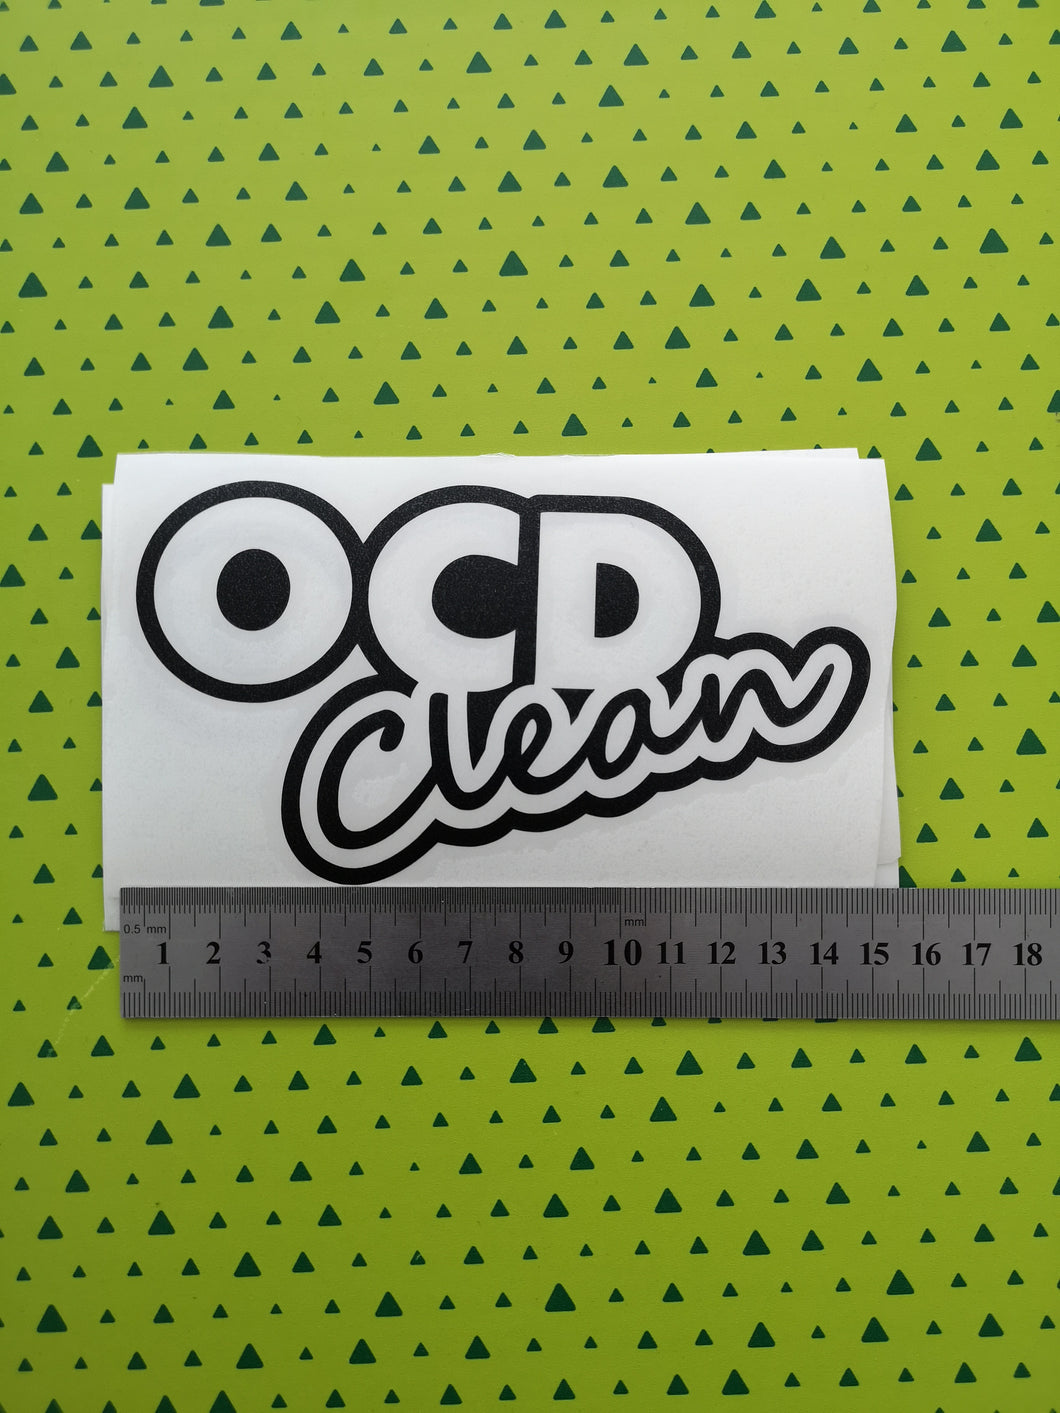 OCD clean